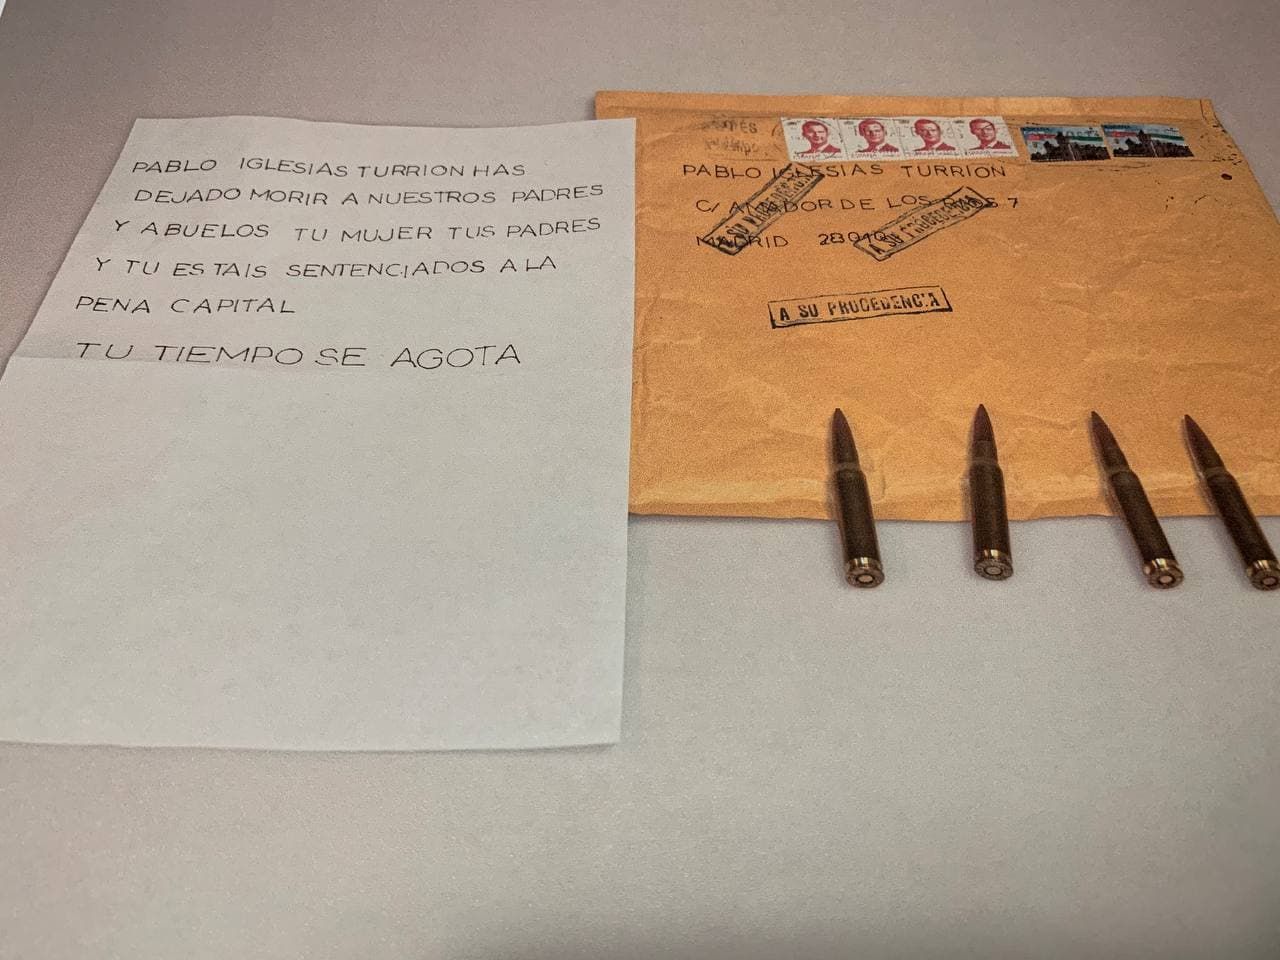 Писмо с курушими, изпратено до лидера на крайнолявата партия "Подемос" Пабло Иглесиас